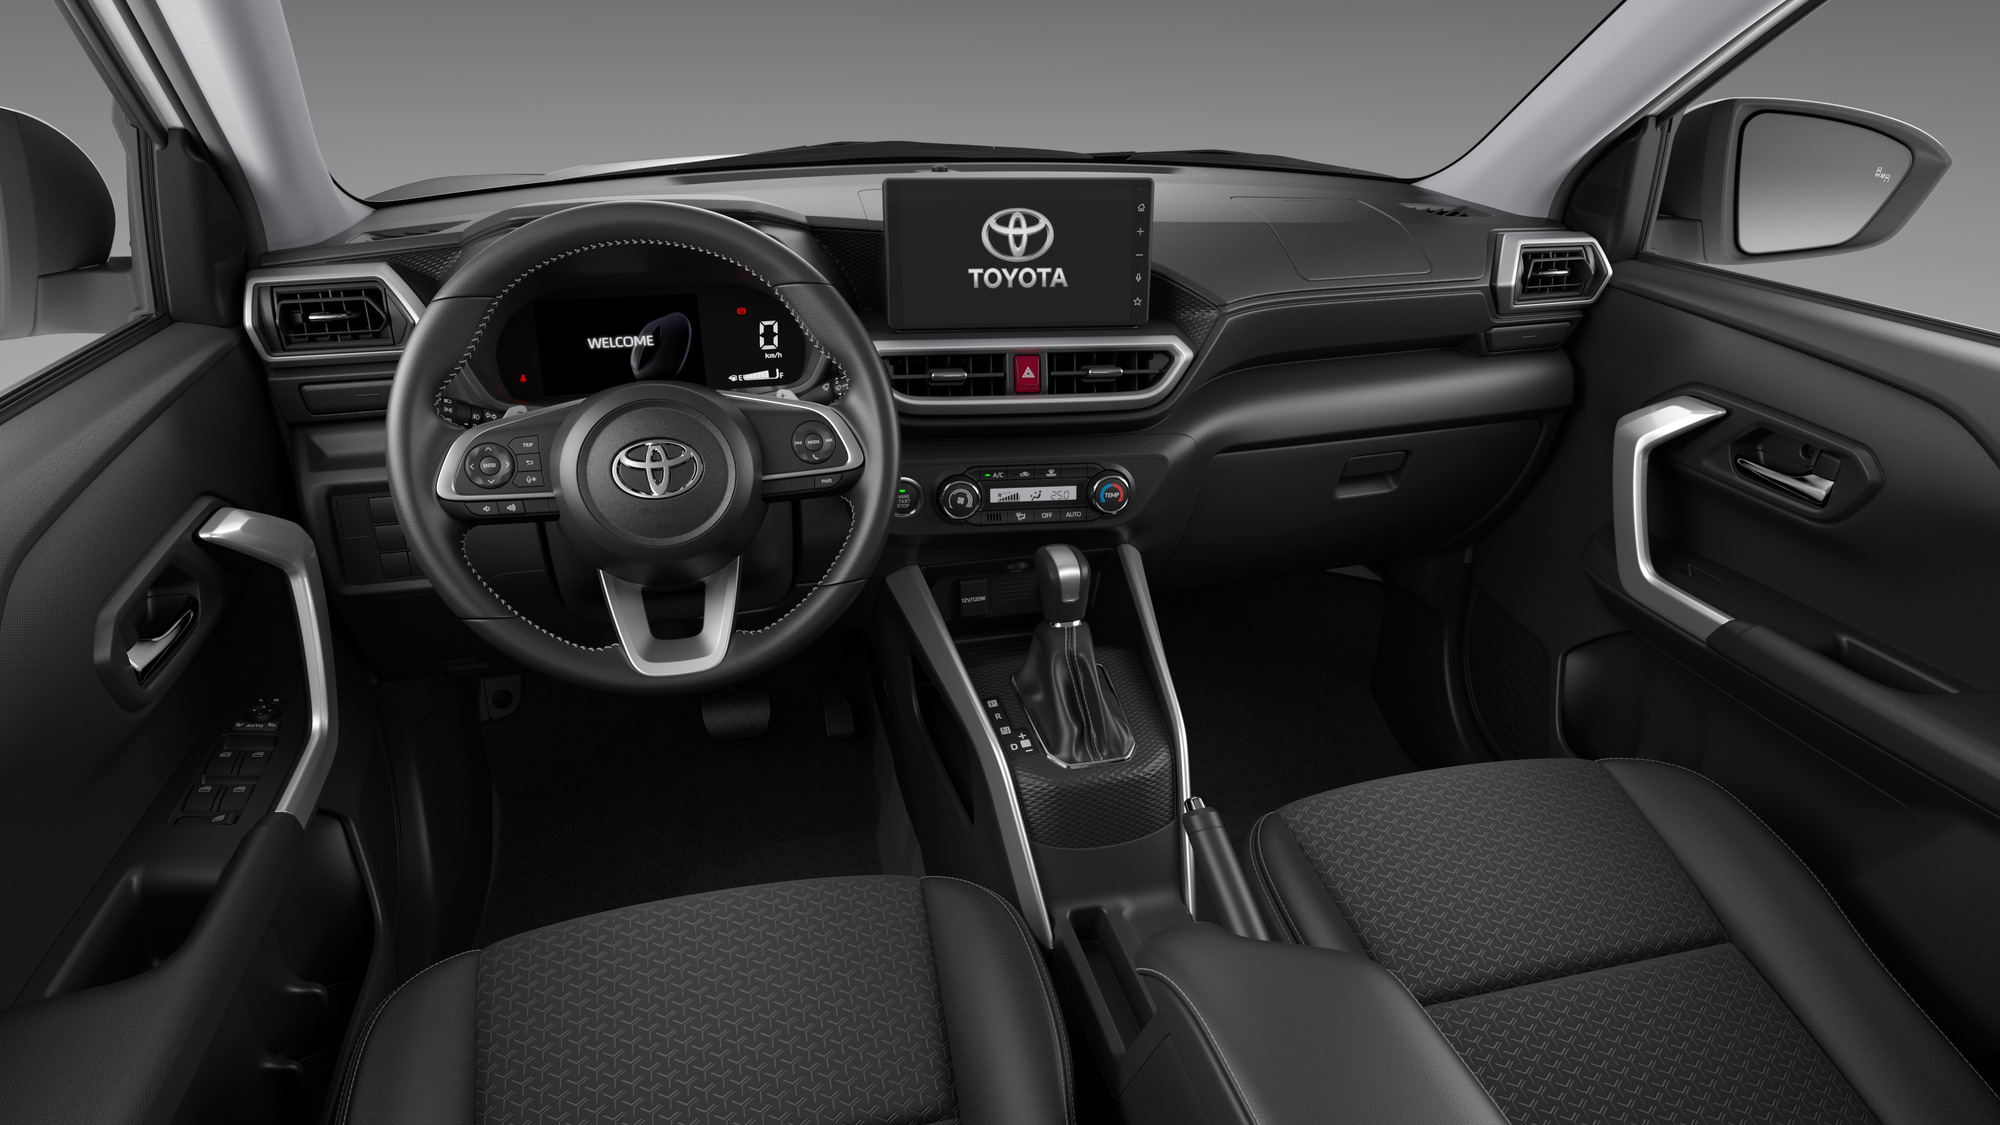 Toyota Raize sắp ra mắt Việt Nam chính thức được hé lộ trang bị: Động cơ tăng áp, màn hình lớn và tính năng an toàn giống Corolla Cross - Ảnh 4.